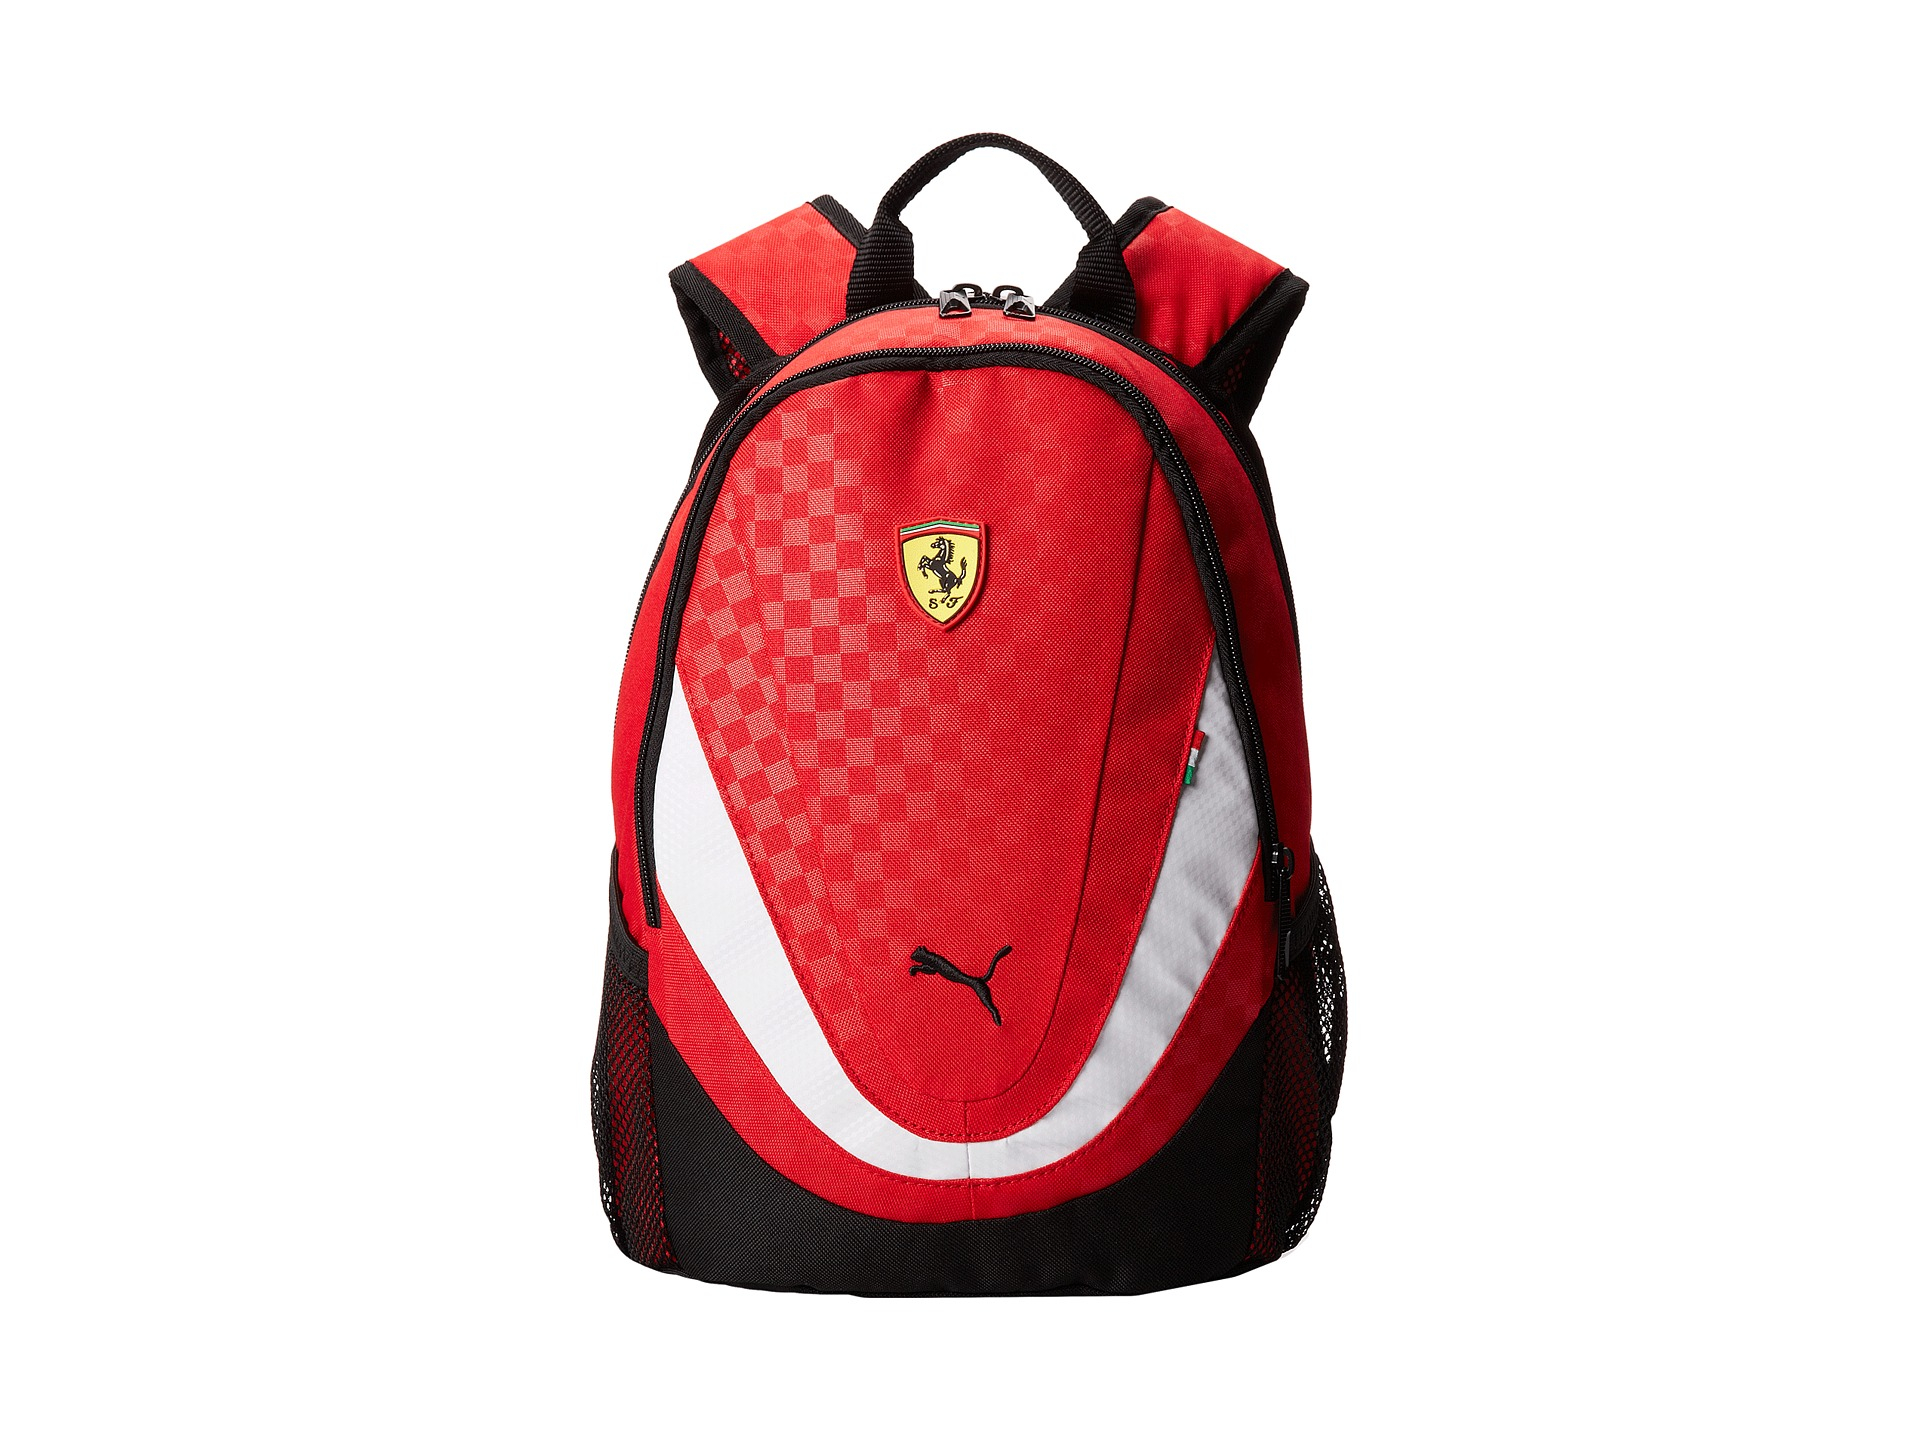 Lyst - Puma Ferrari Replica Small Backpack in Red